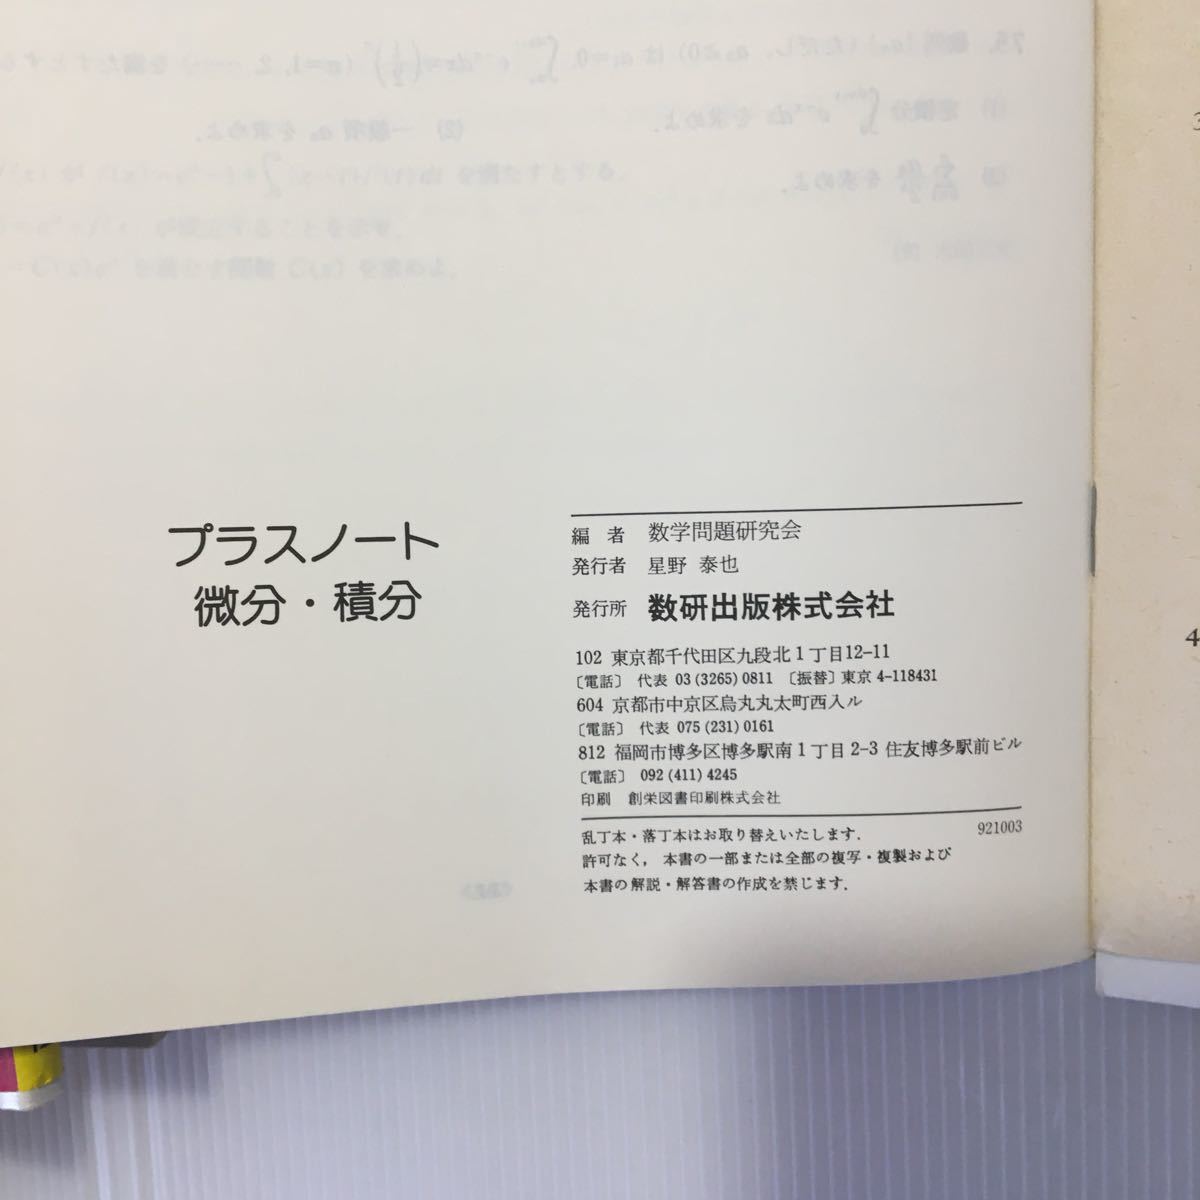 zaa-045★プラスノート微分・積分 (日本語) 単行本 1993/2/1 数学問題研究会 (著)